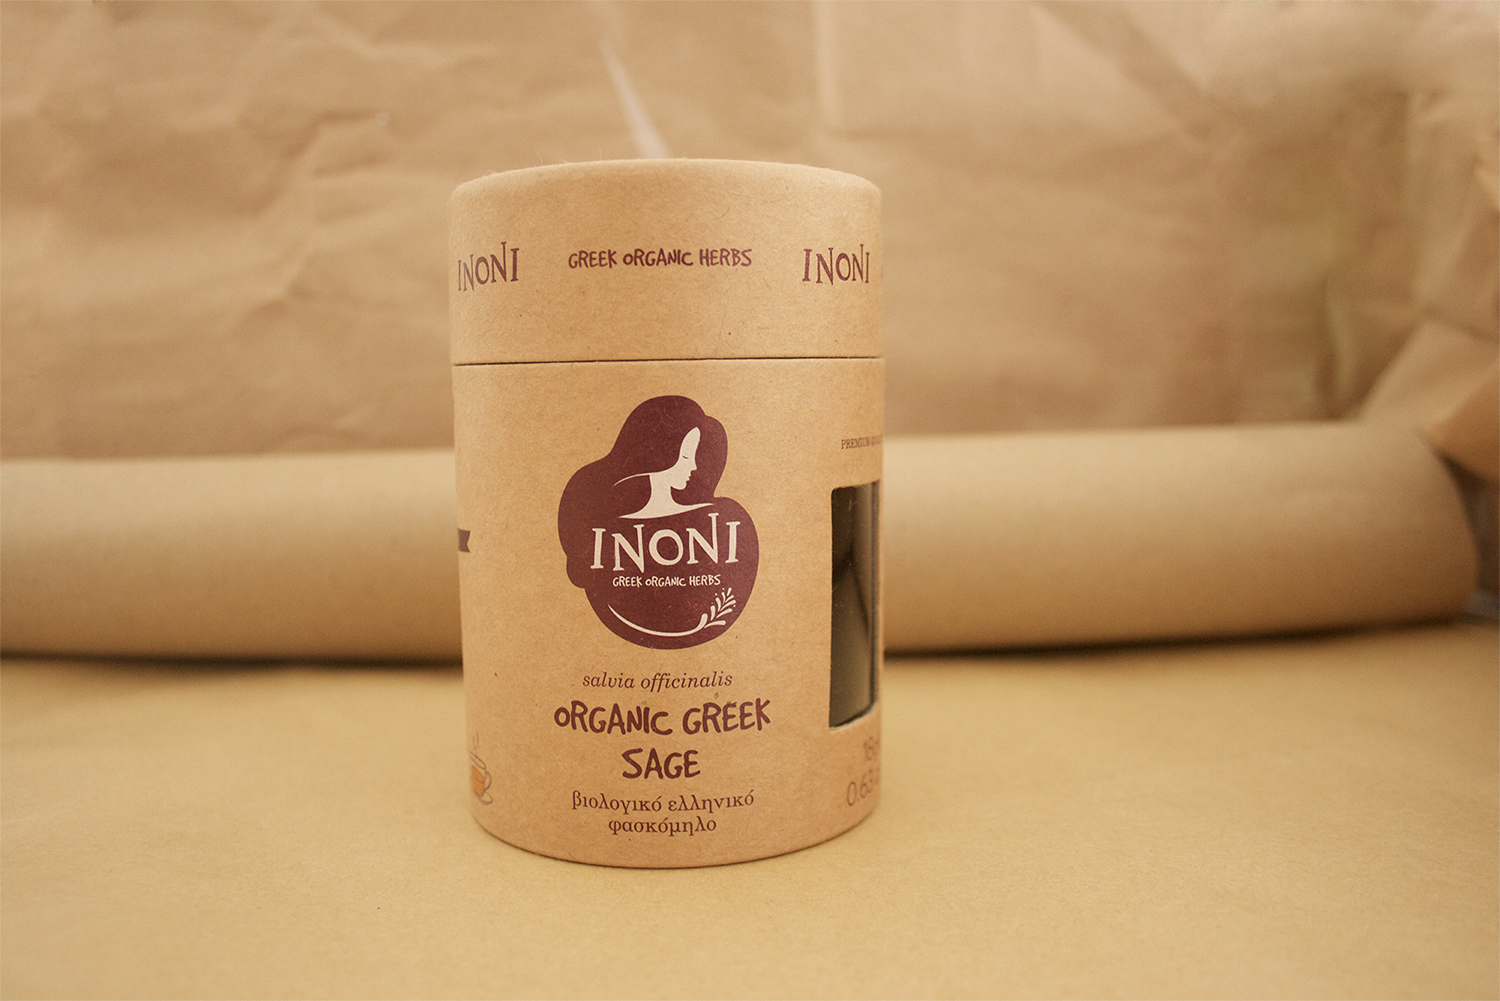 Inoni_Packaging_05